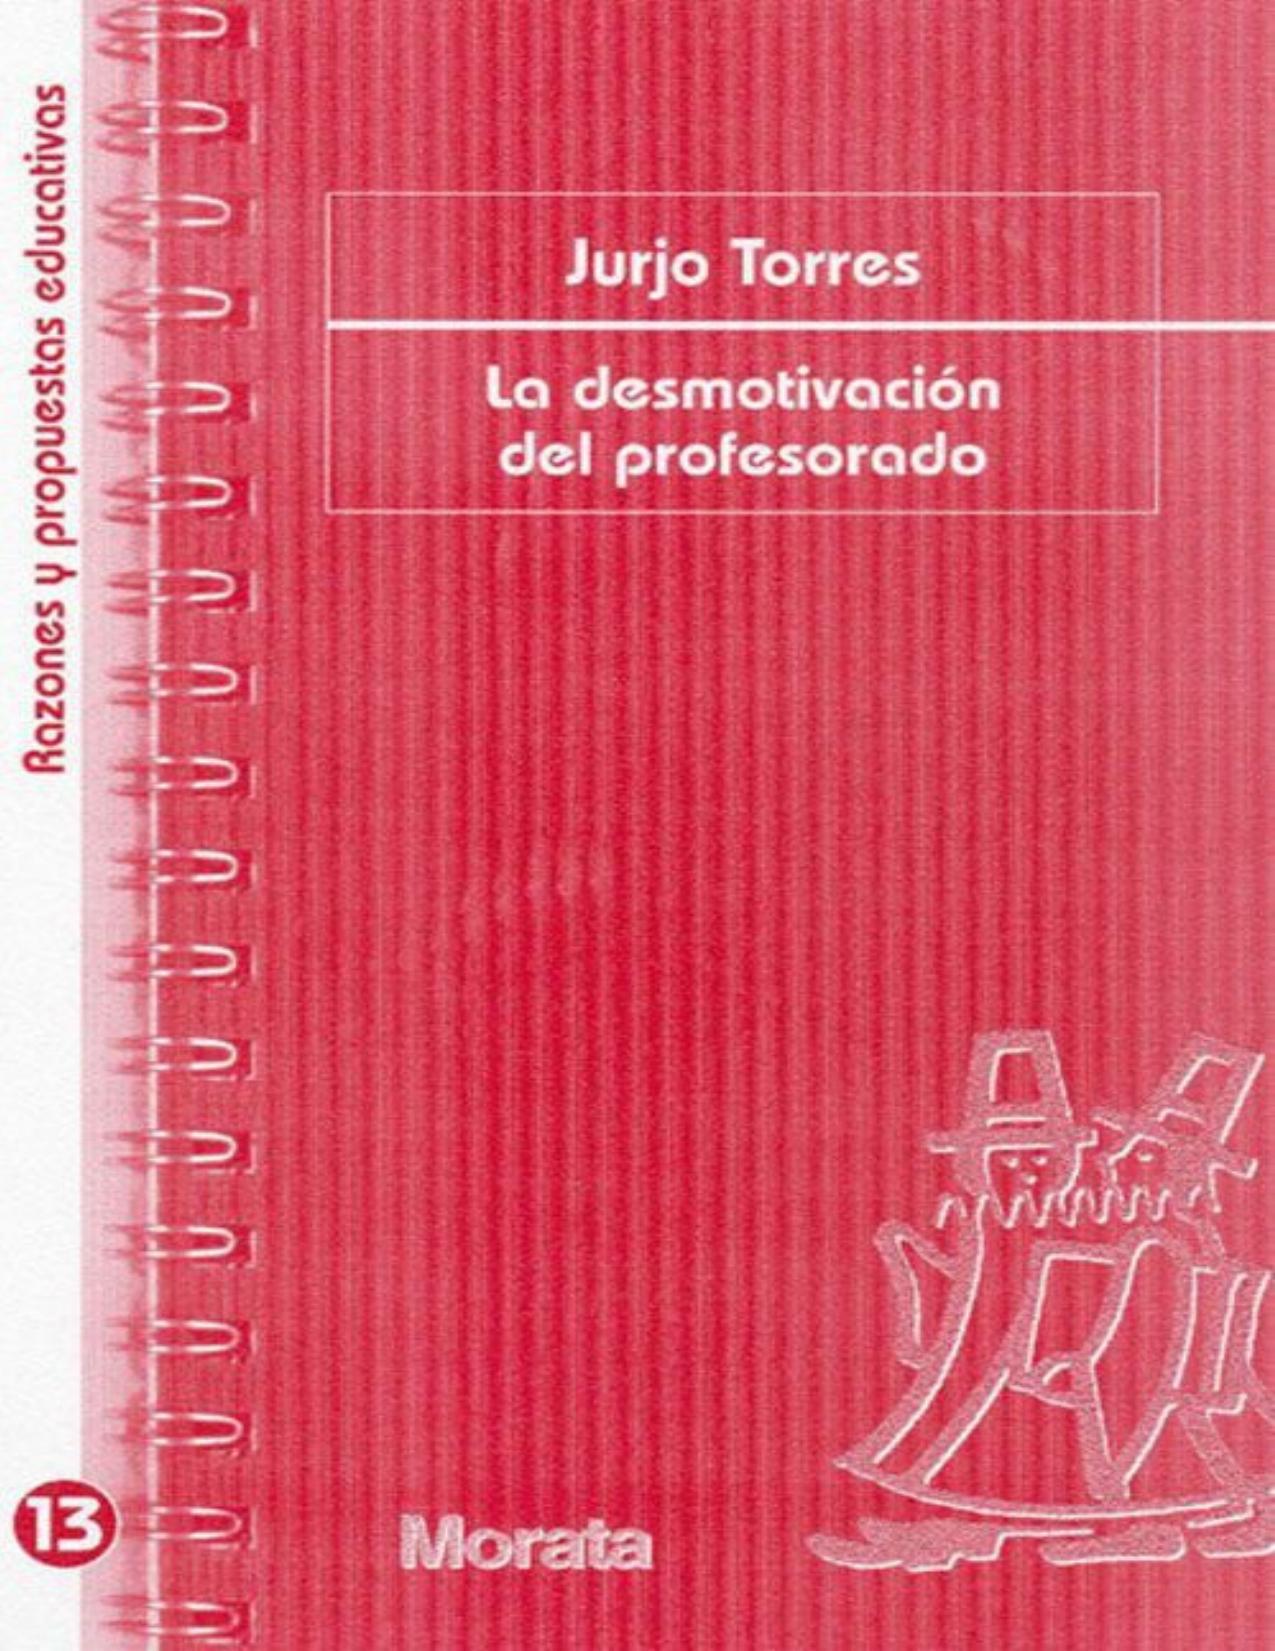 La desmotivación del profesorado (Spanish Edition)